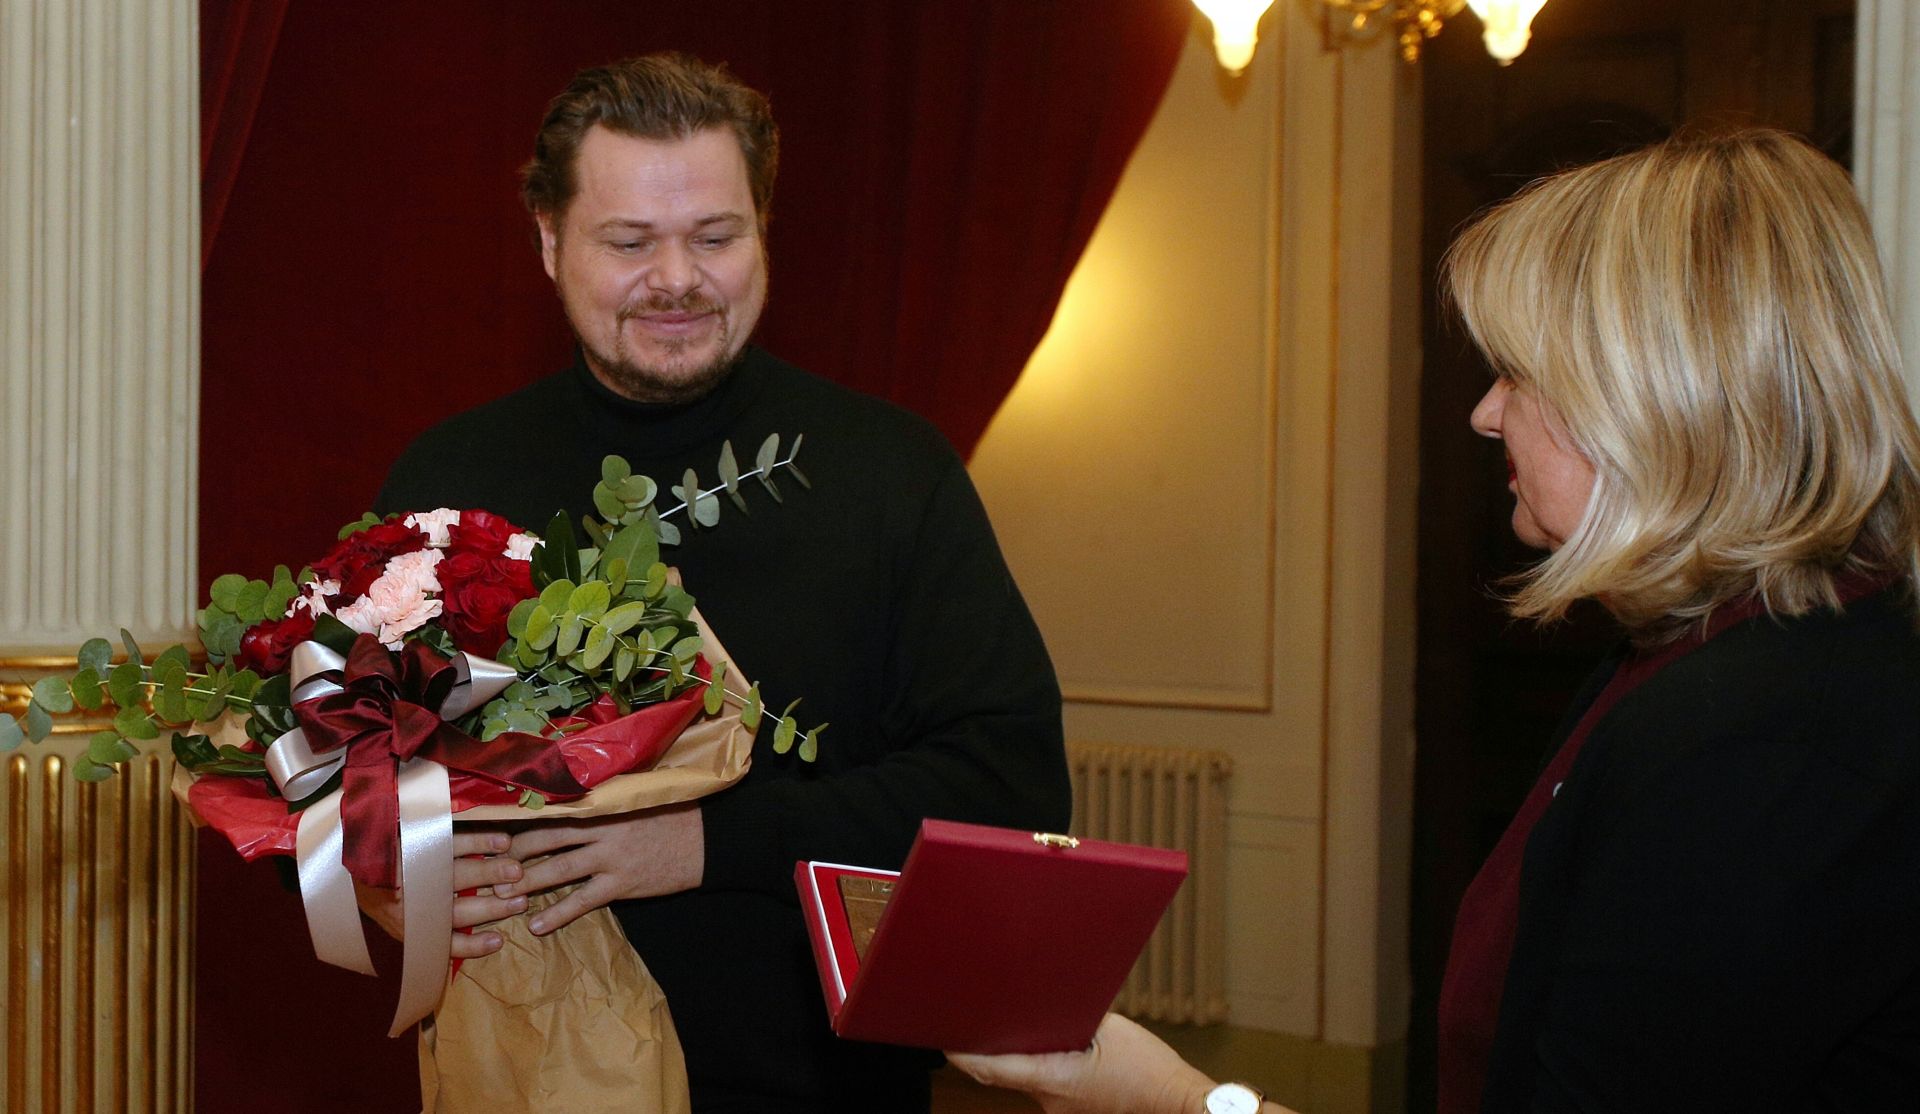 24.11.2018., Zagreb - Tomislavu Muzeku dodijeljena je nagrada Tito Strozzi.
Photo: Zarko Basic/PIXSELL